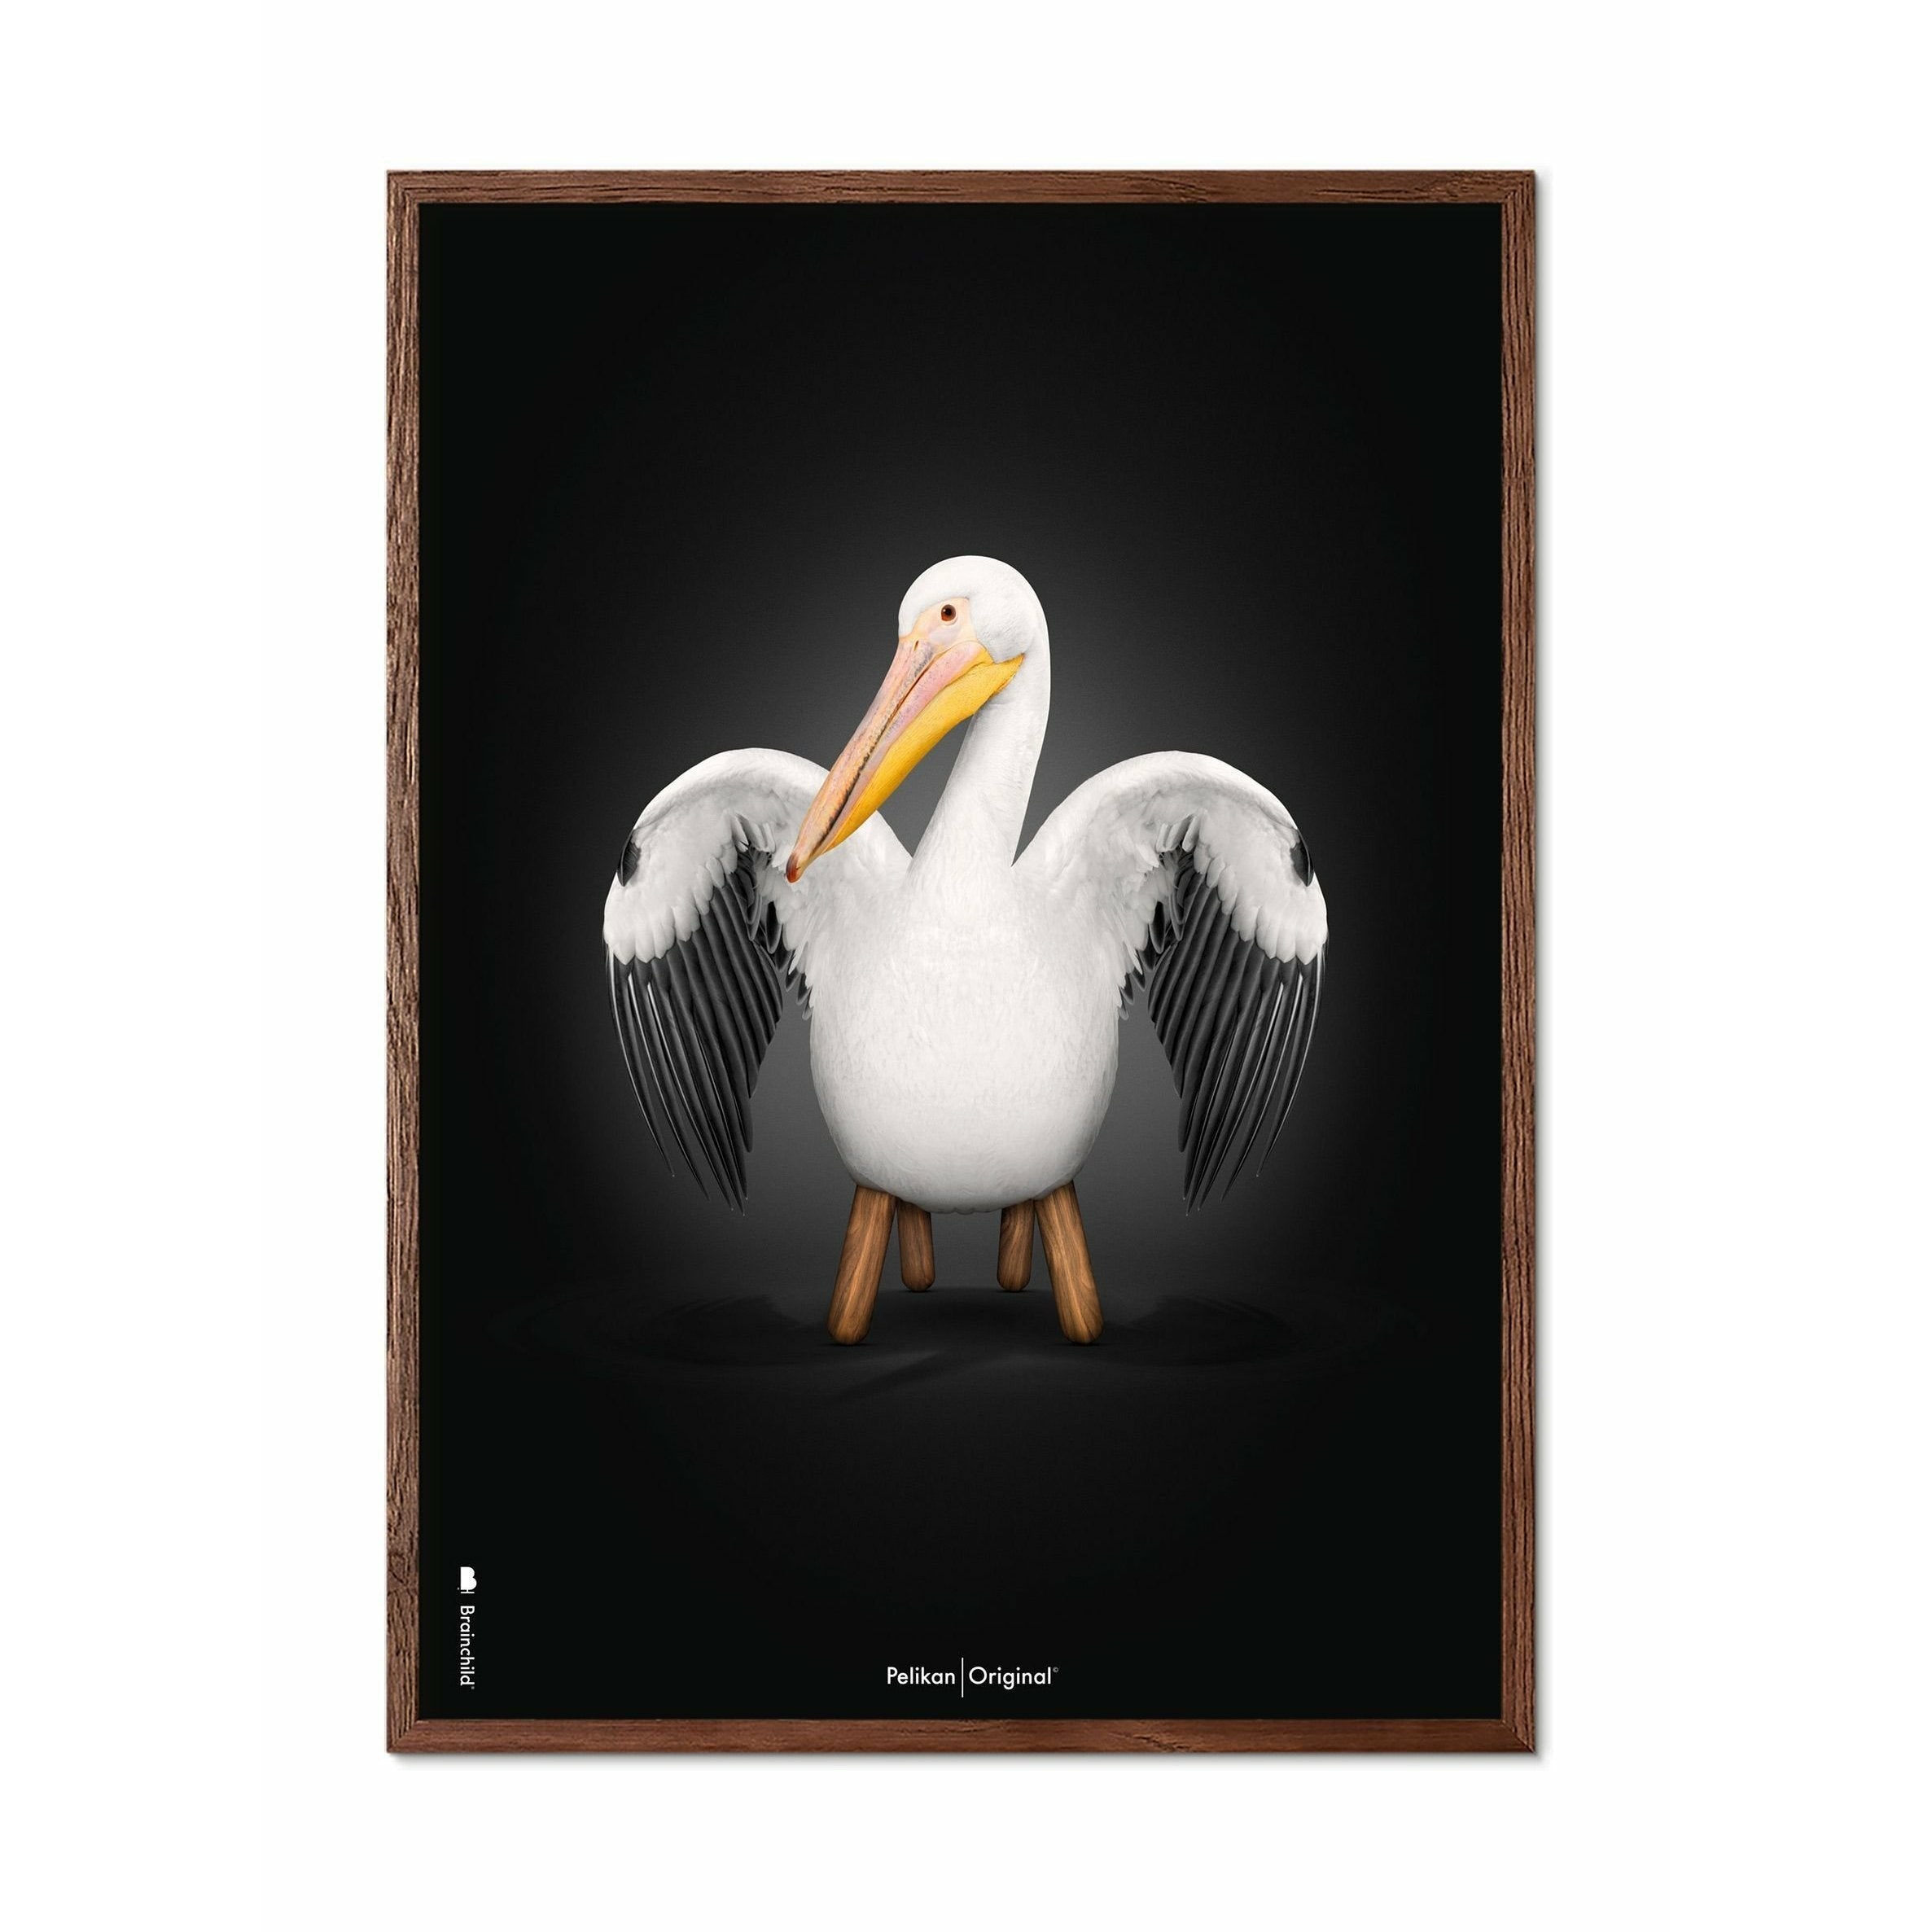 Hugarfóstur Pelikan klassísk veggspjald, dökkt viðargrind 30x40 cm, svartur bakgrunnur